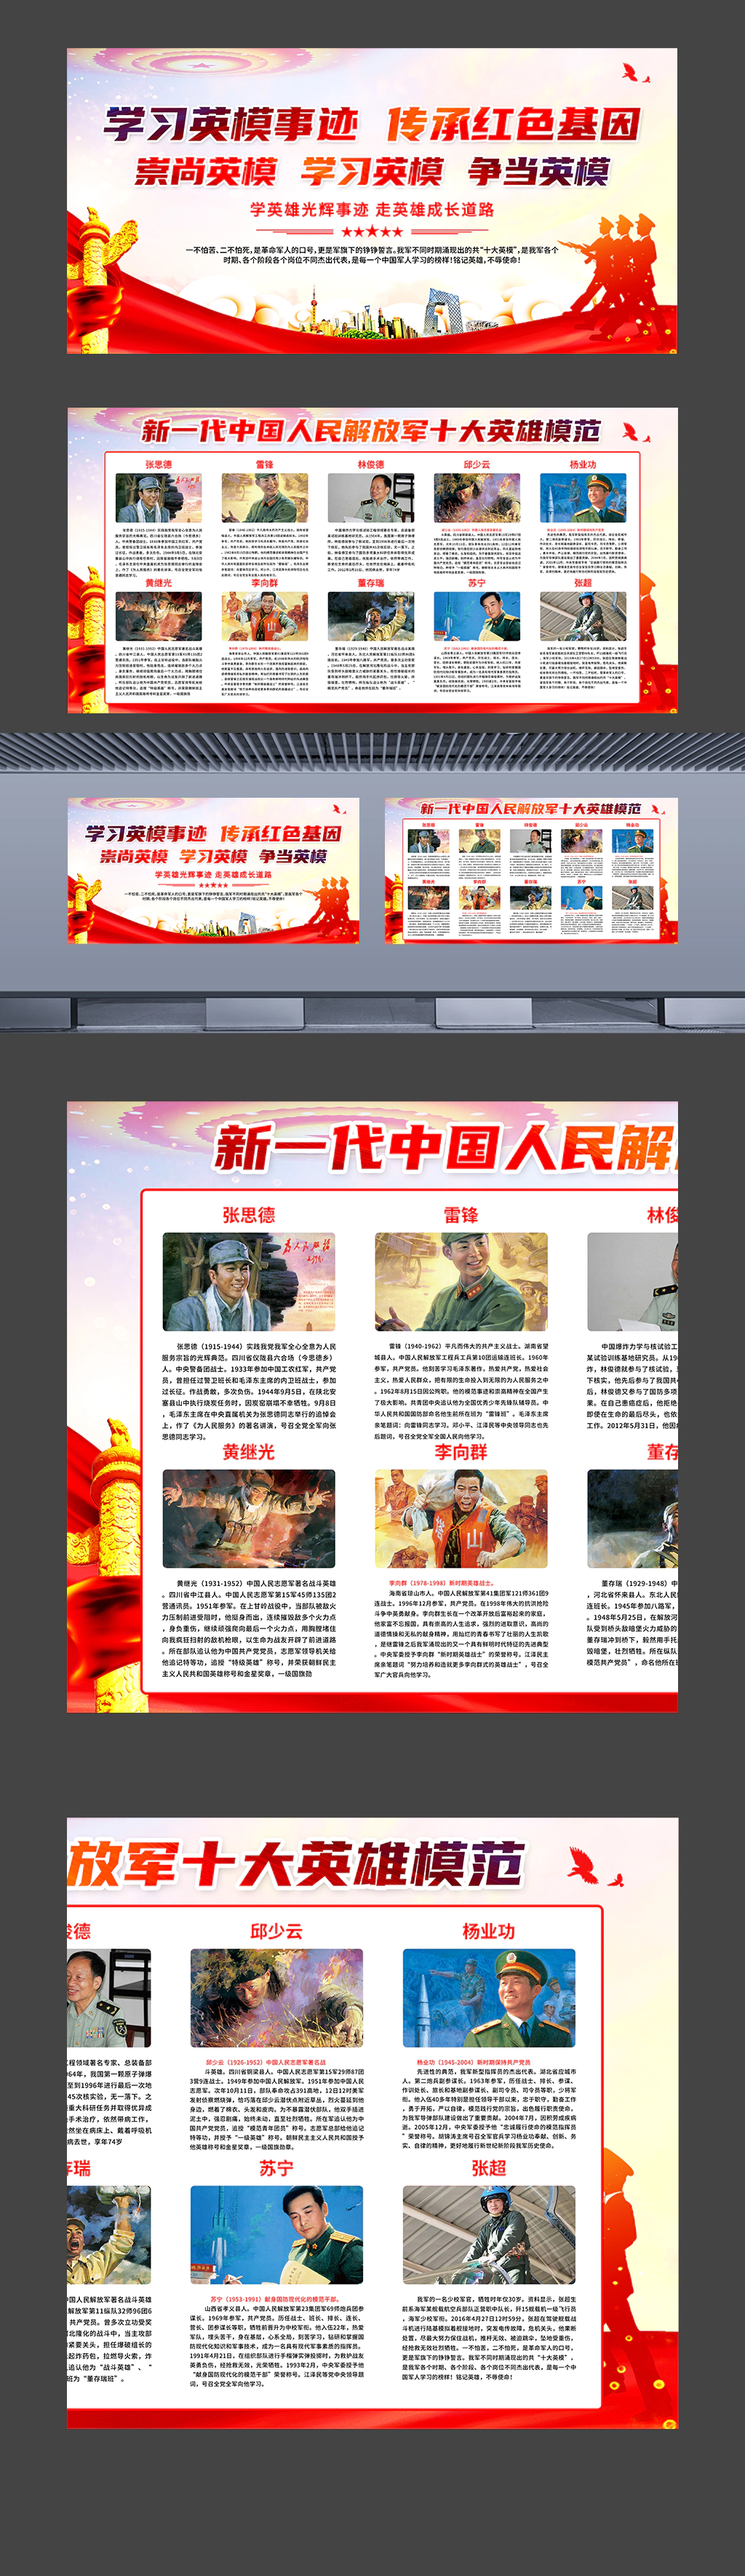 新一代中国人民解放军十大英雄模范部队连队宣传挂图海报展板